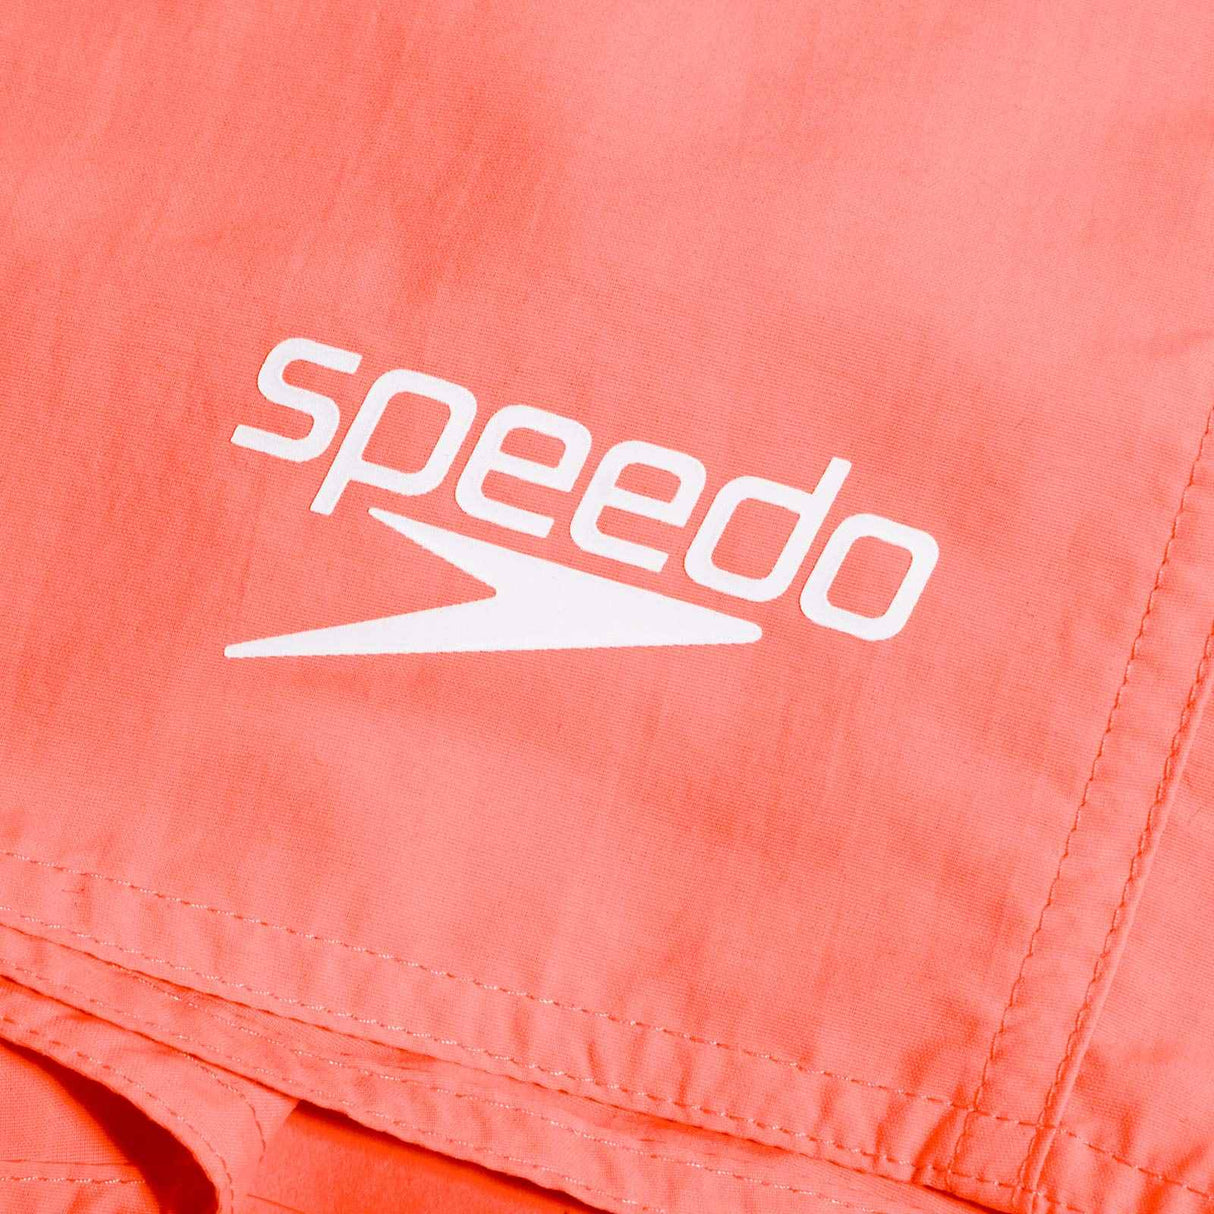 Speedo Essentials Mens 16 Swim Shorts